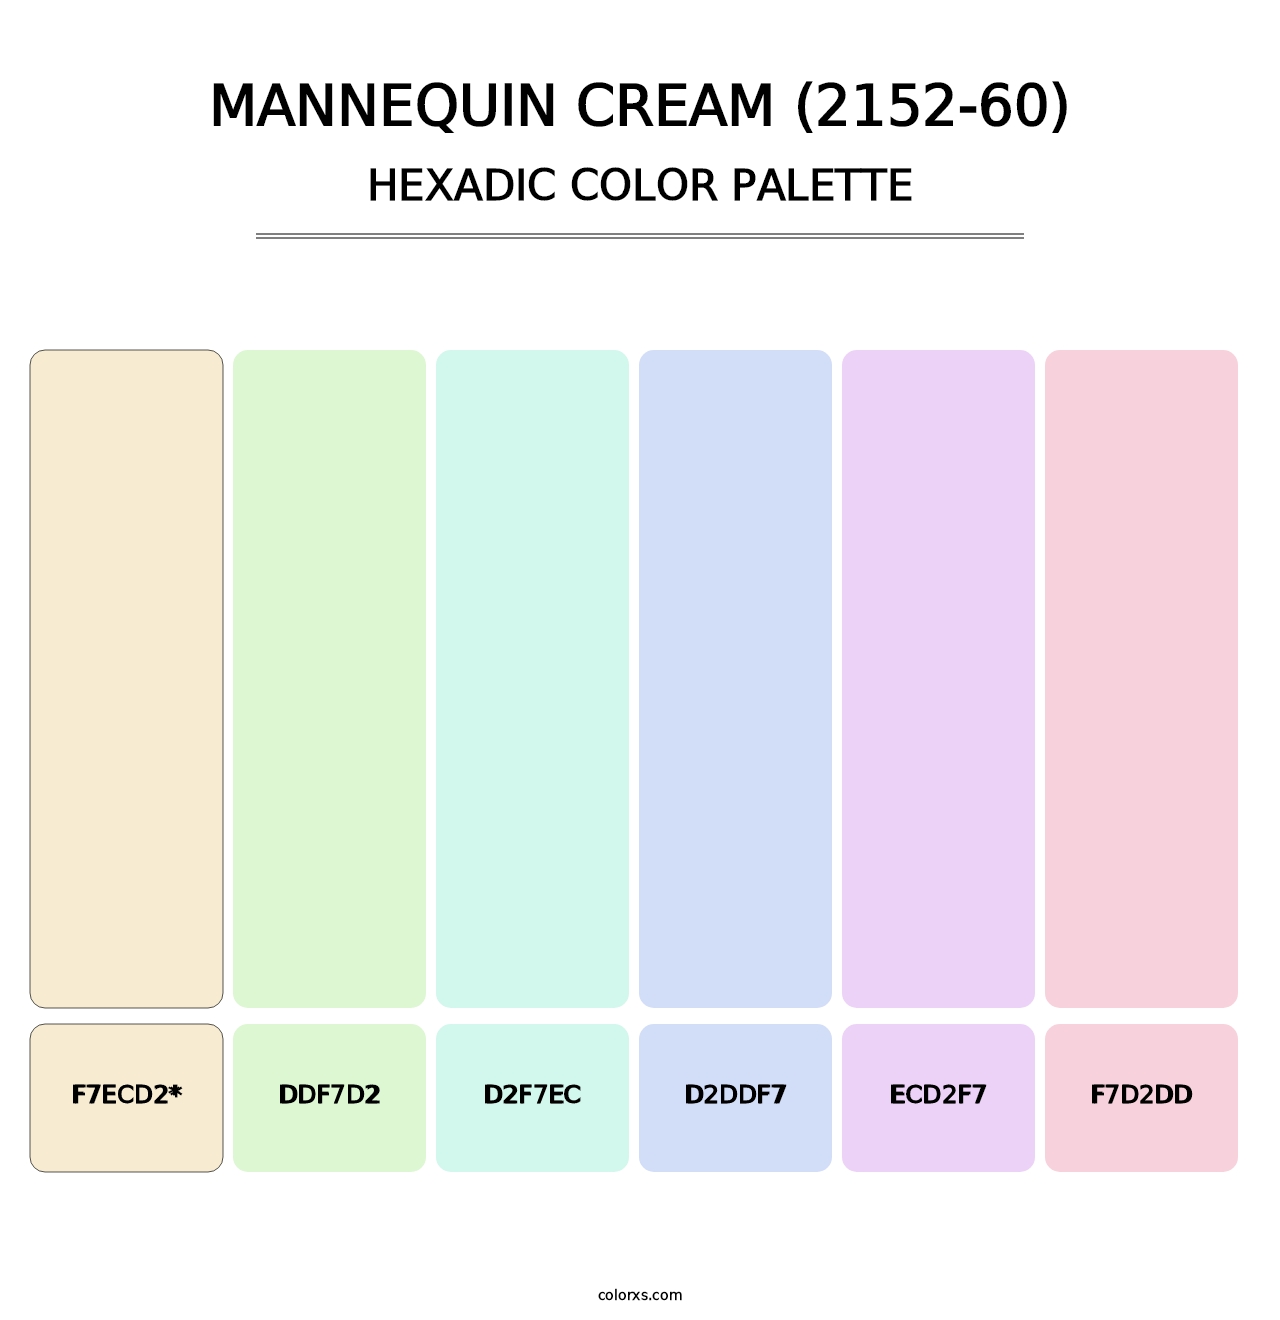 Mannequin Cream (2152-60) - Hexadic Color Palette